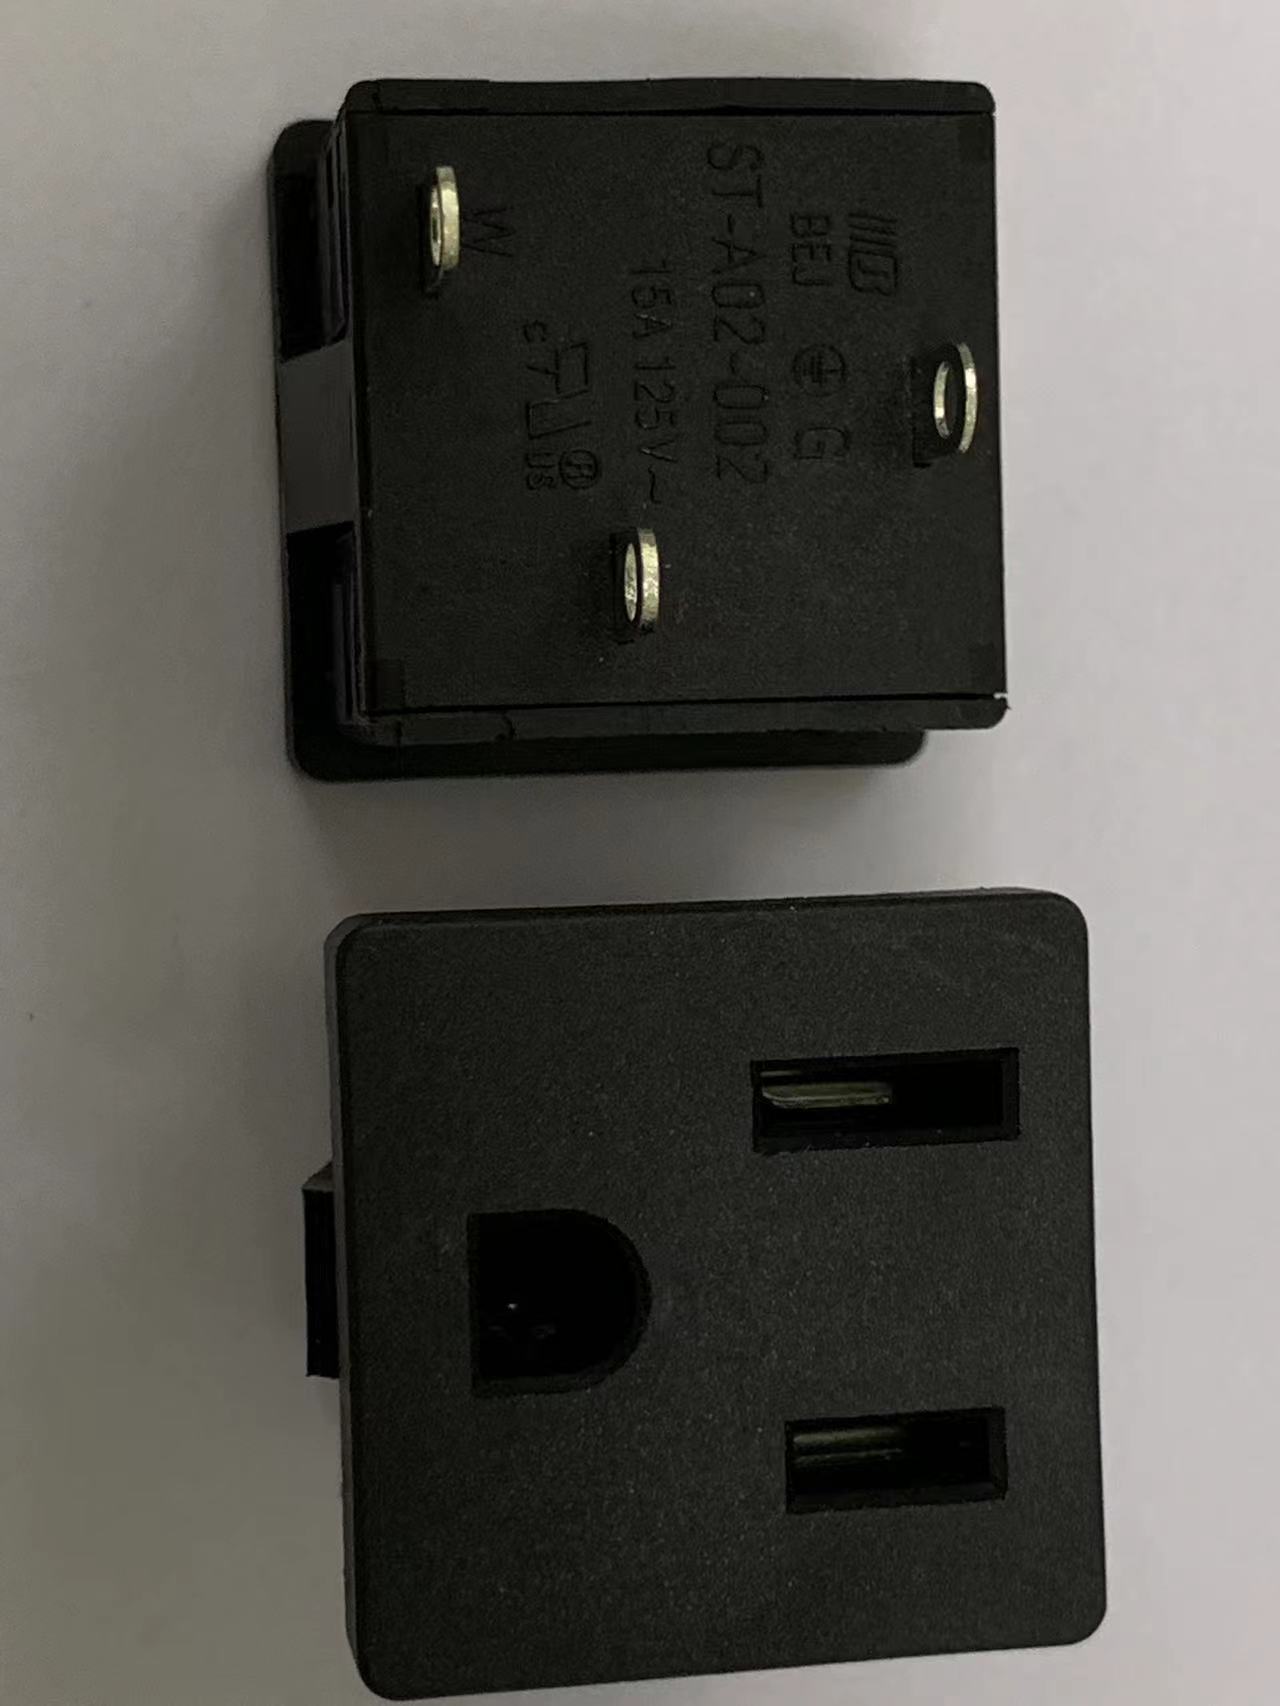 贝尔佳BEJ美式储能插座之ST-A02-002D美规三孔电源插座